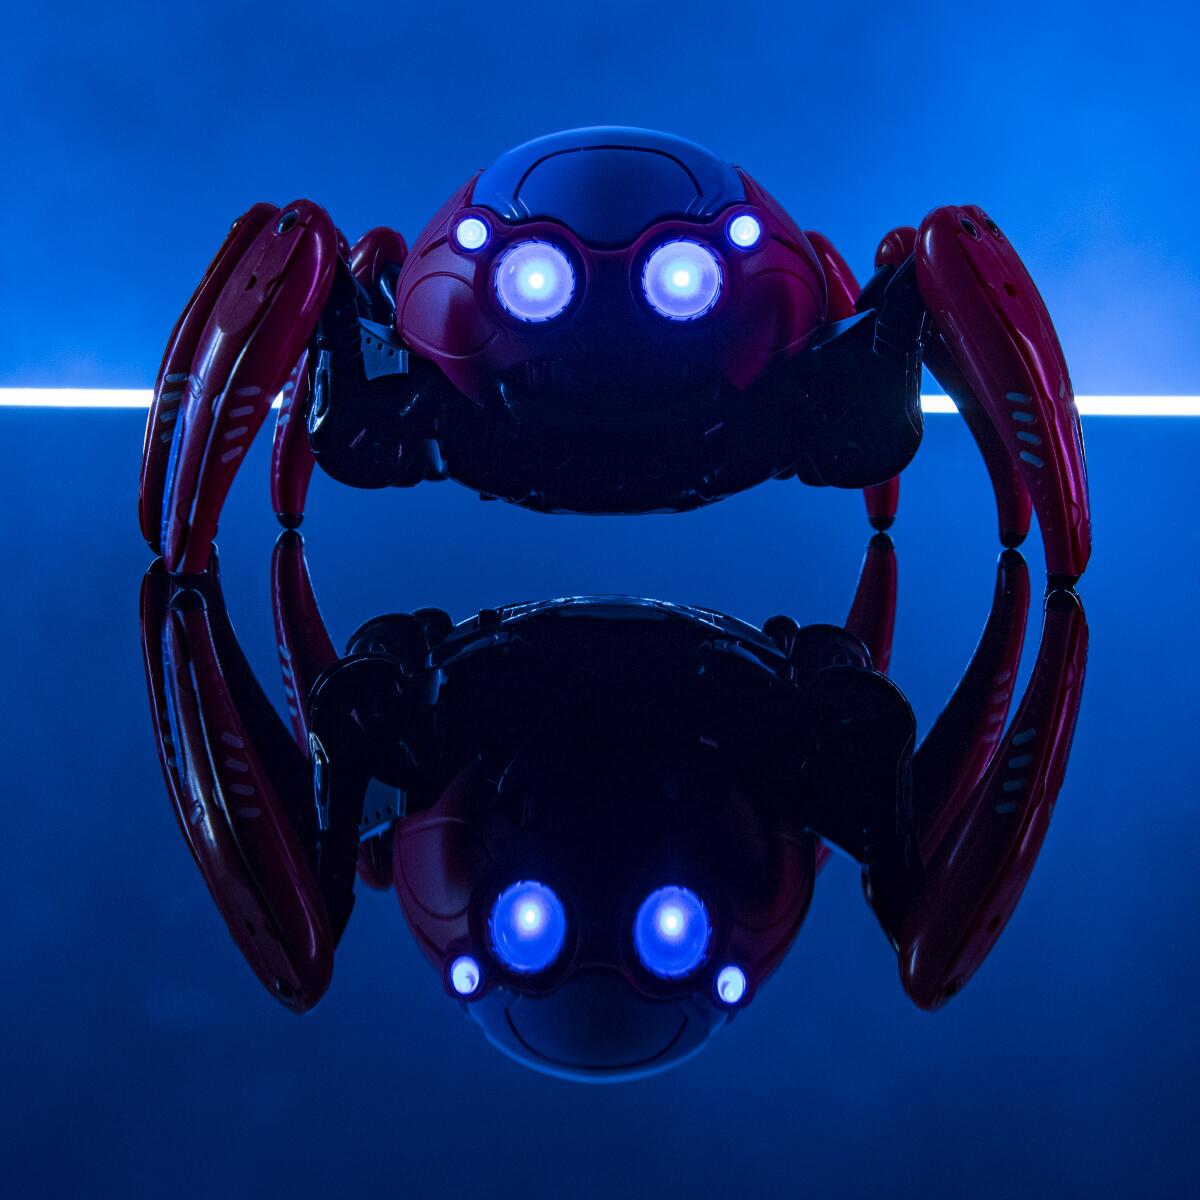 En WEB Suppliers te espera Spider-Bots un robot a control remoto que puedes cambiar su apariencia.